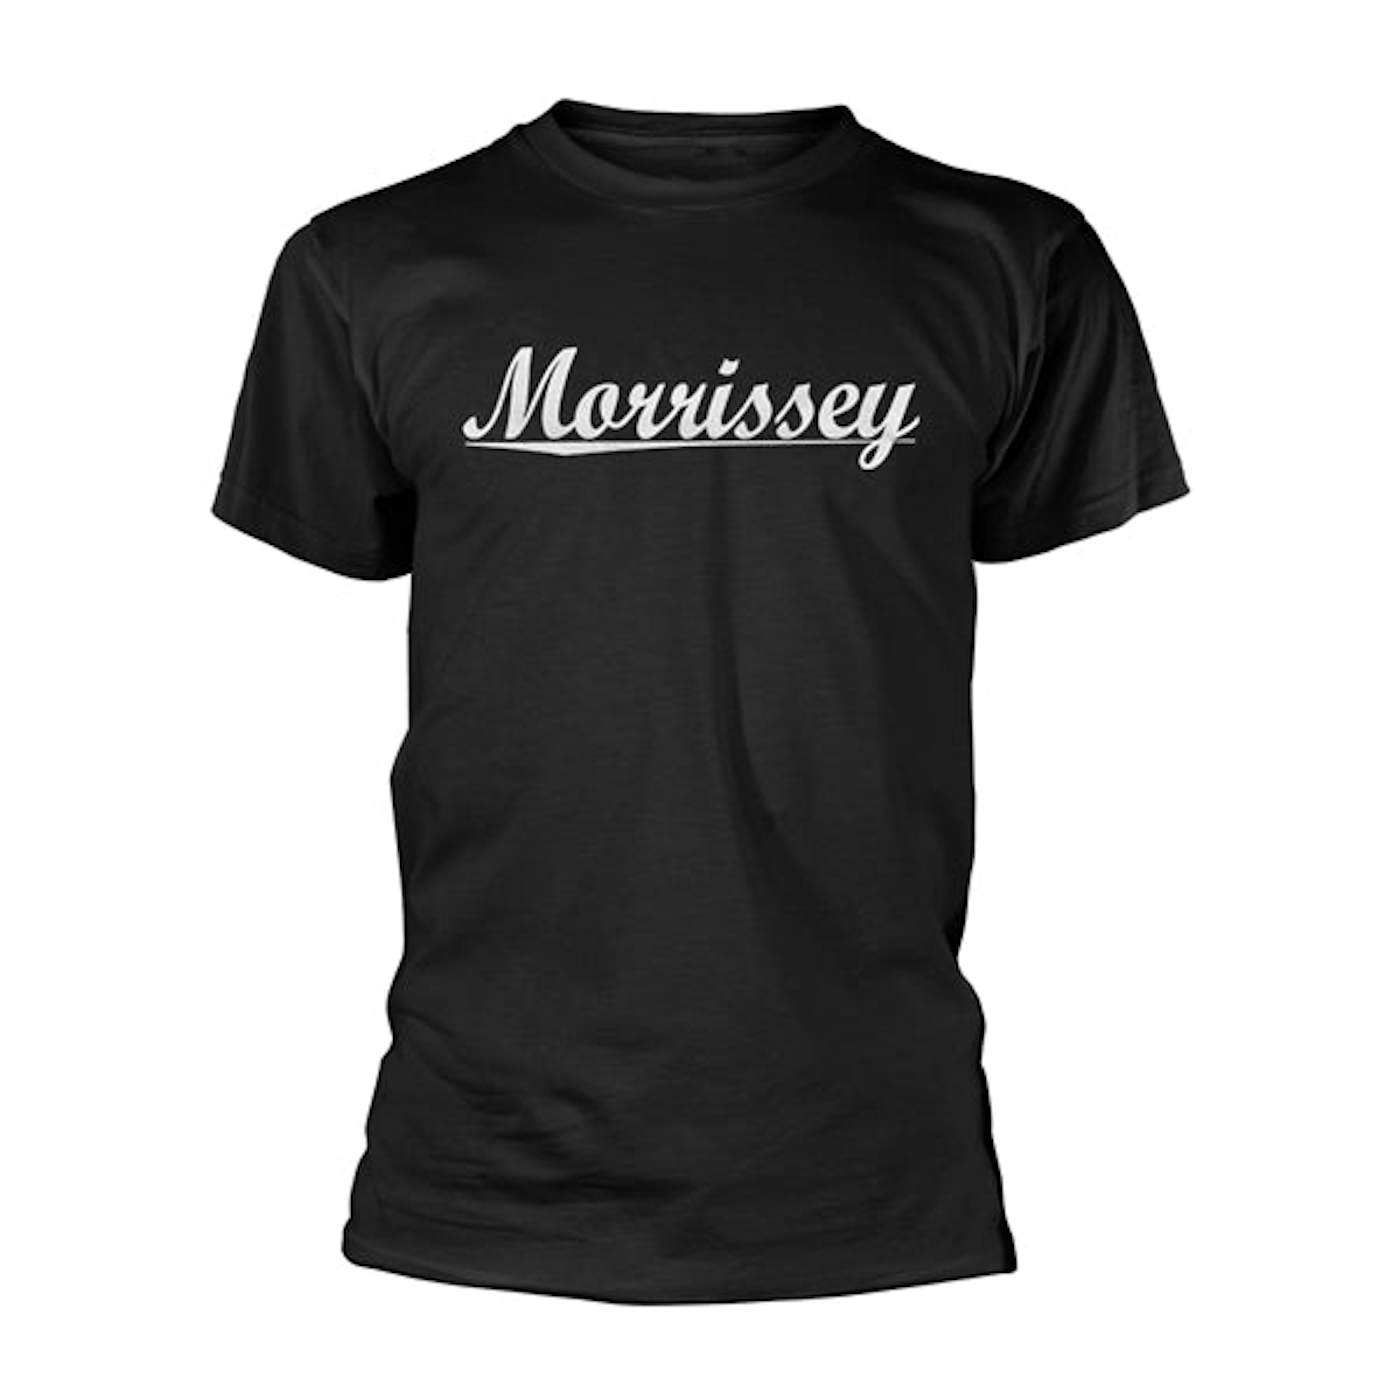 Morrissey T-Shirt - Text Logo